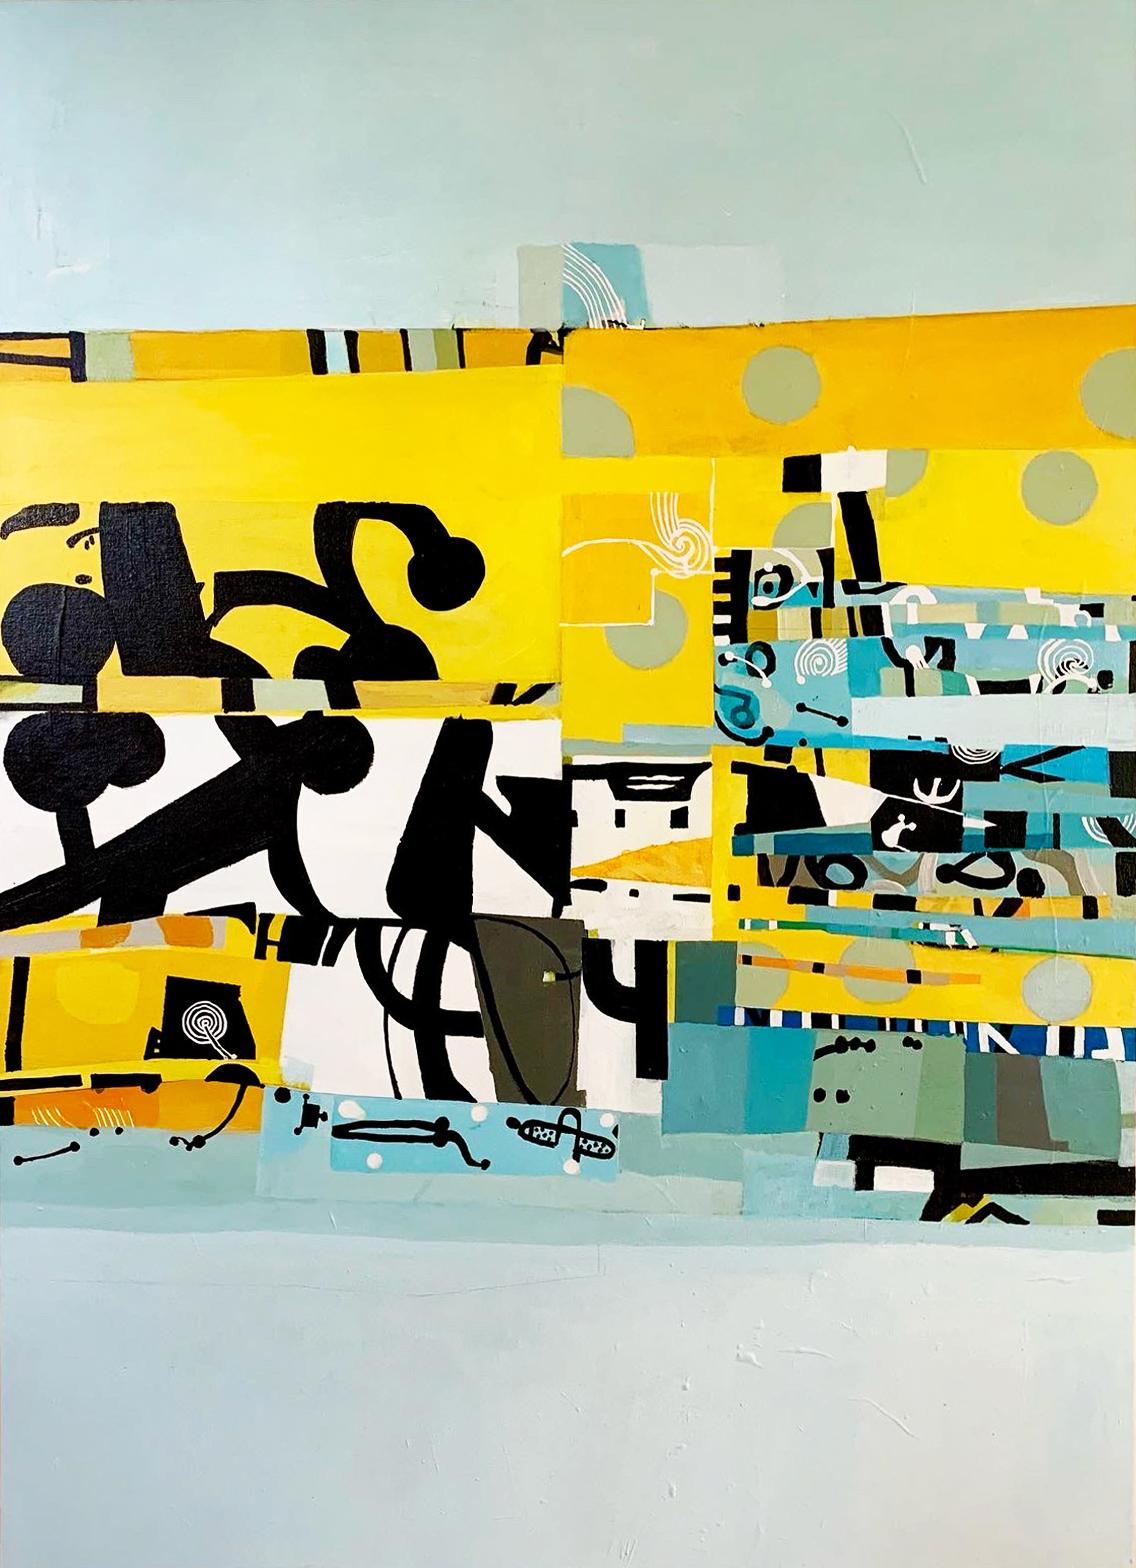 Abstract Painting Russell Frampton - 65 à 69 Part 2 - peinture abstraite contemporaine en technique mixte colorée sur toile